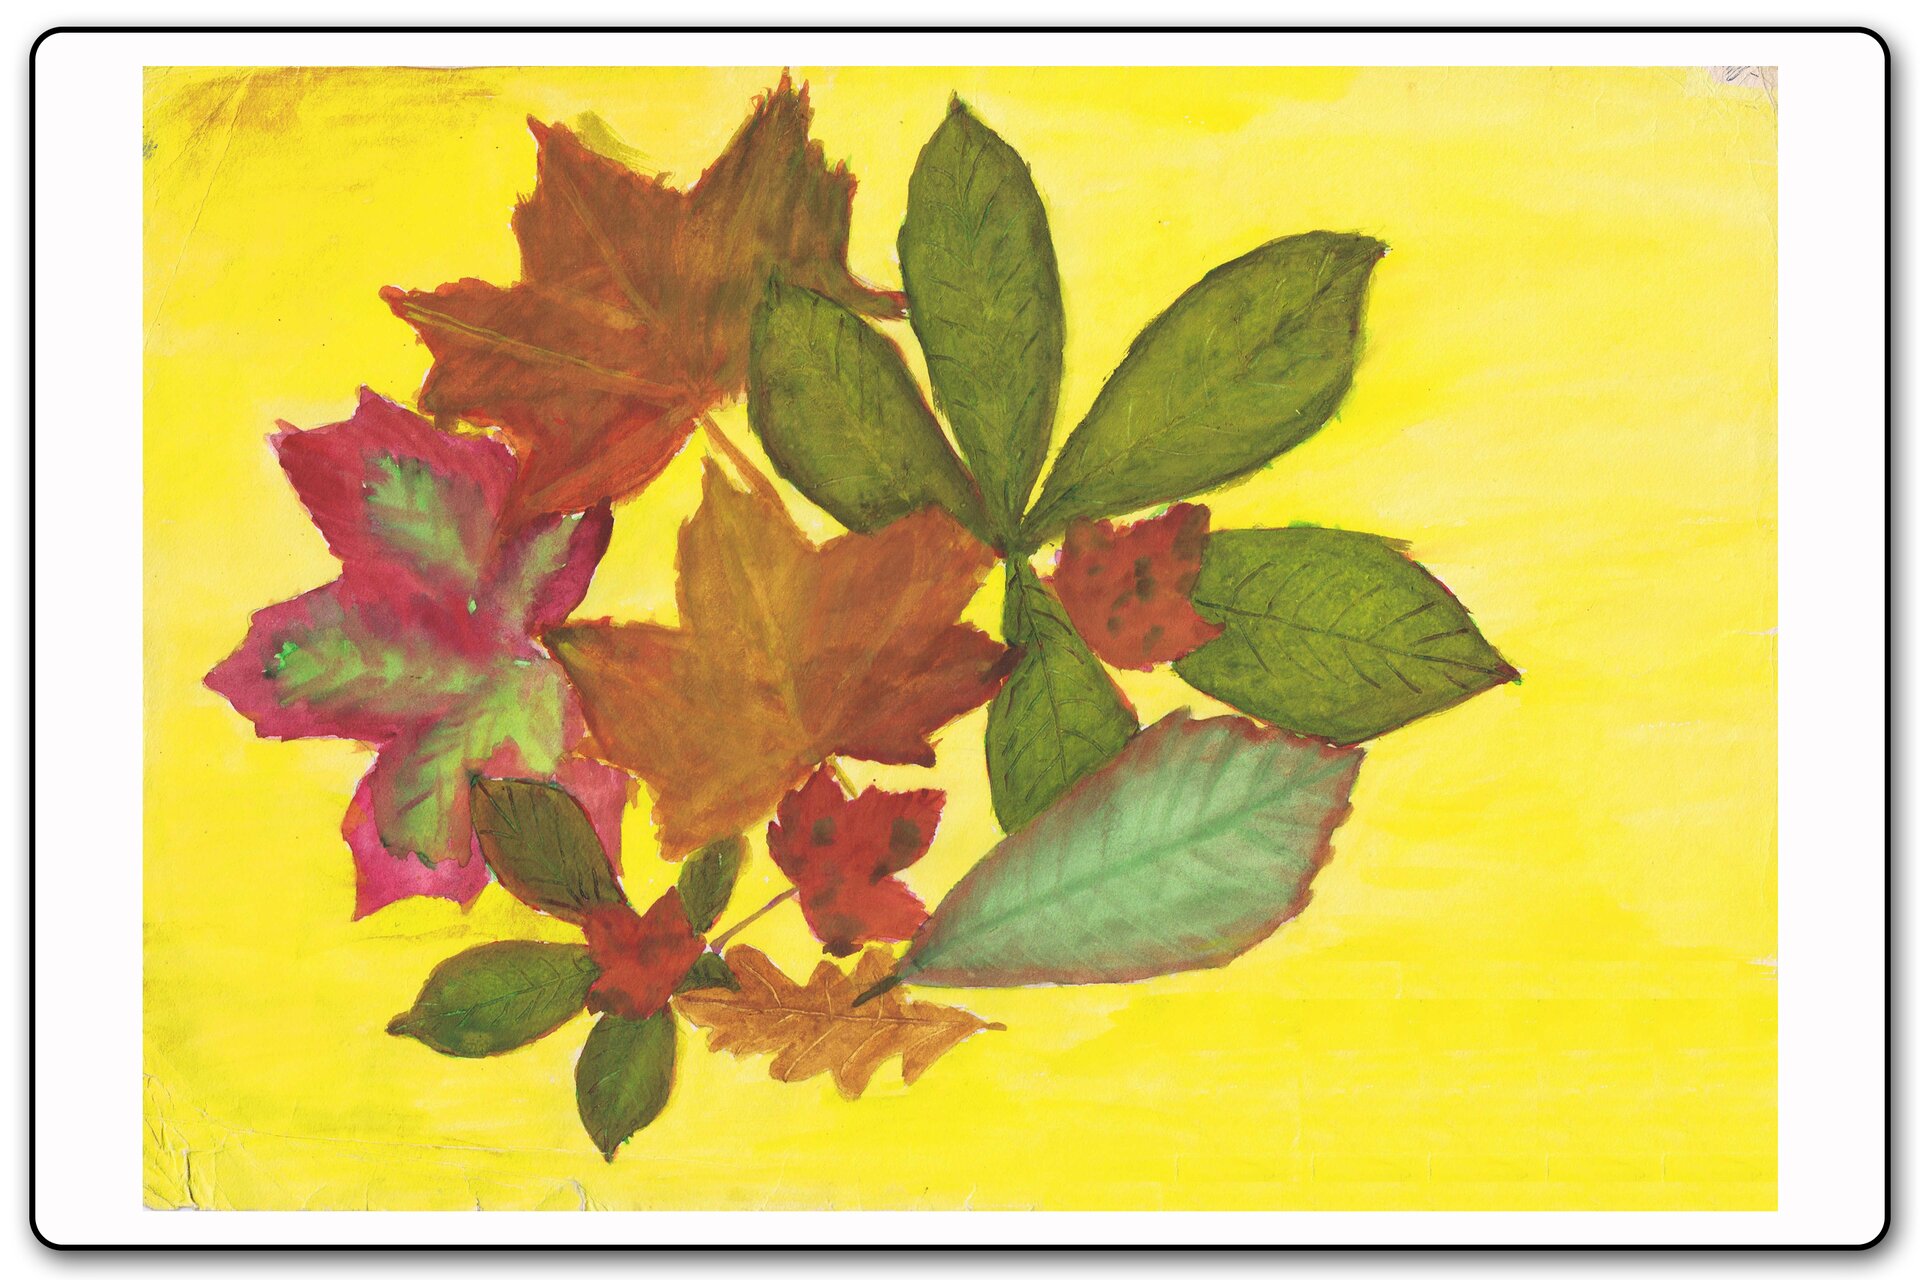 Ilustracja 4 galerii prac plastycznych uczniów. Ilustracja przedstawia jesienne liście namalowane farbami.